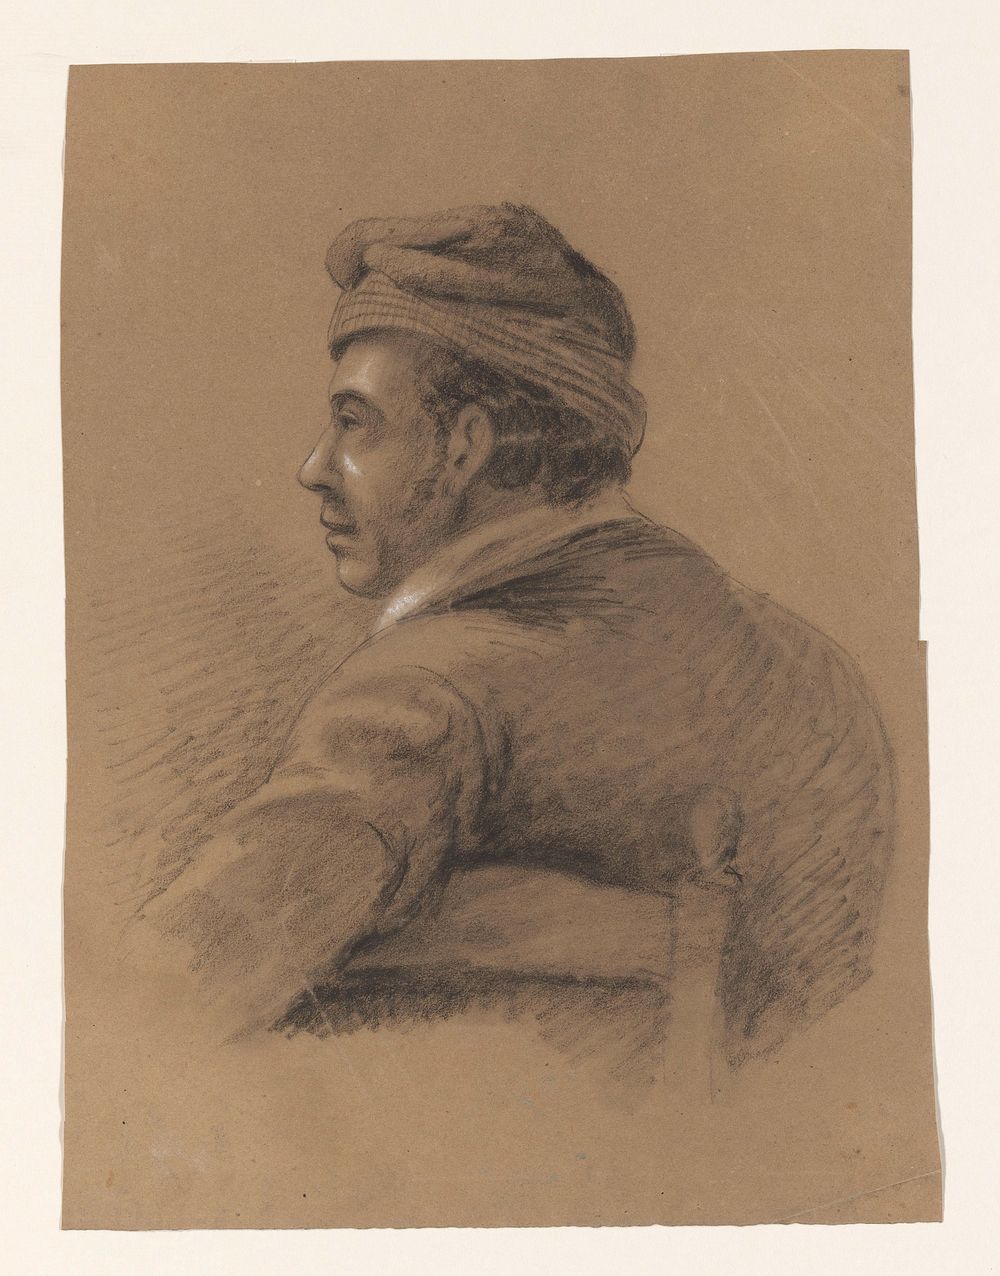 Buste van een gedraaid zittende man, op de rug gezien (1809 - 1869) by Alexander Cranendoncq